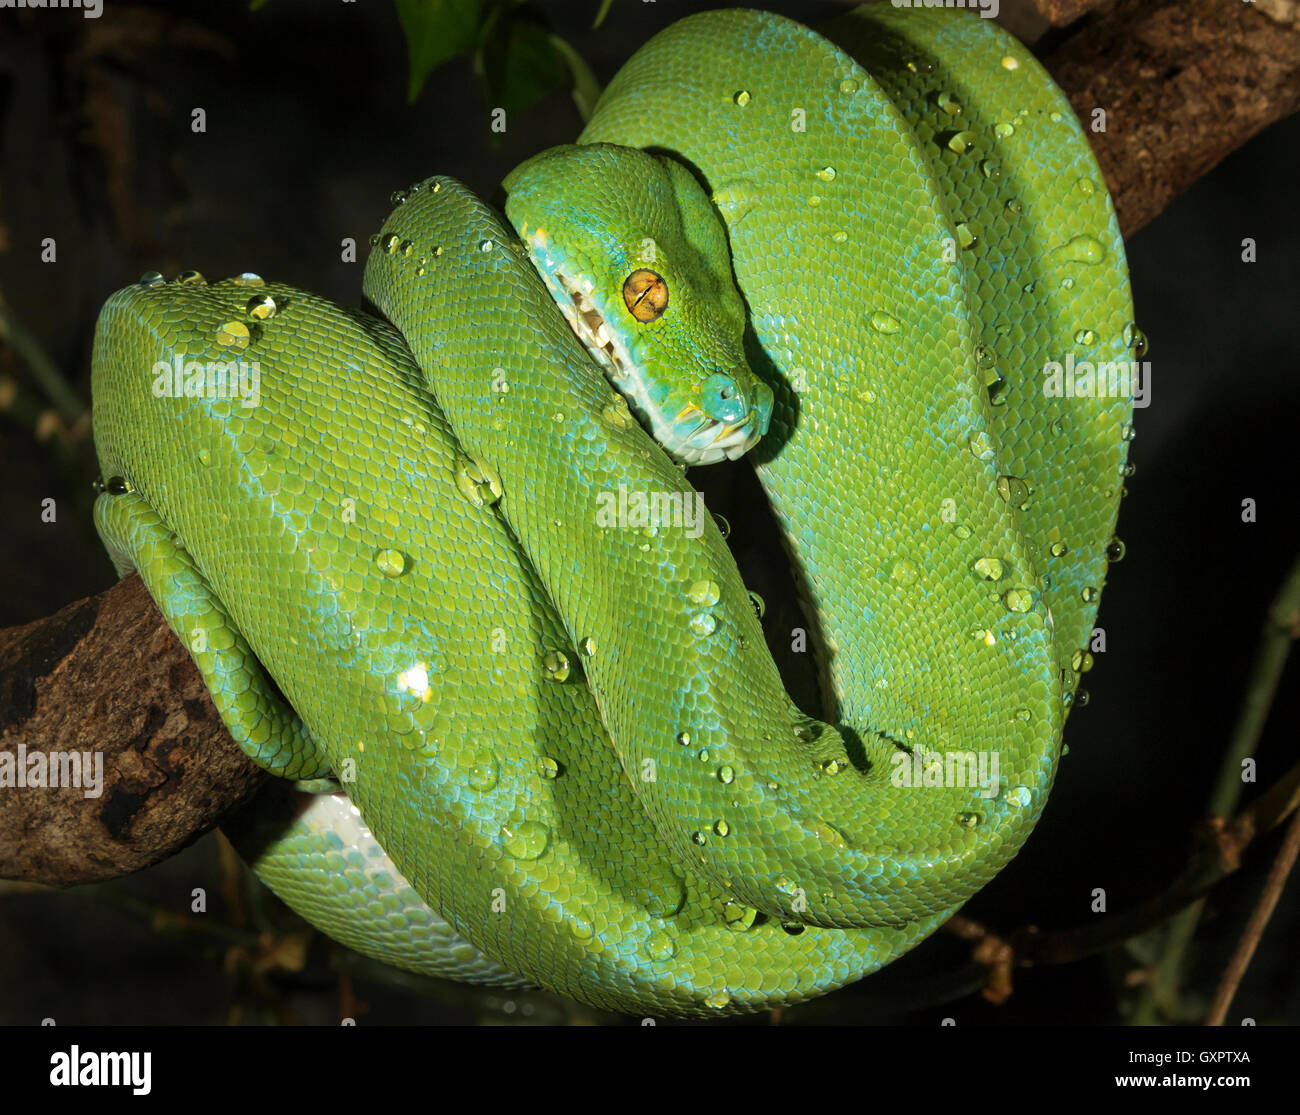 Python d'arbre vert (Morelia viridis), captif (originaire d'Indonésie, de Nouvelle-Guinée, d'Australie) Banque D'Images